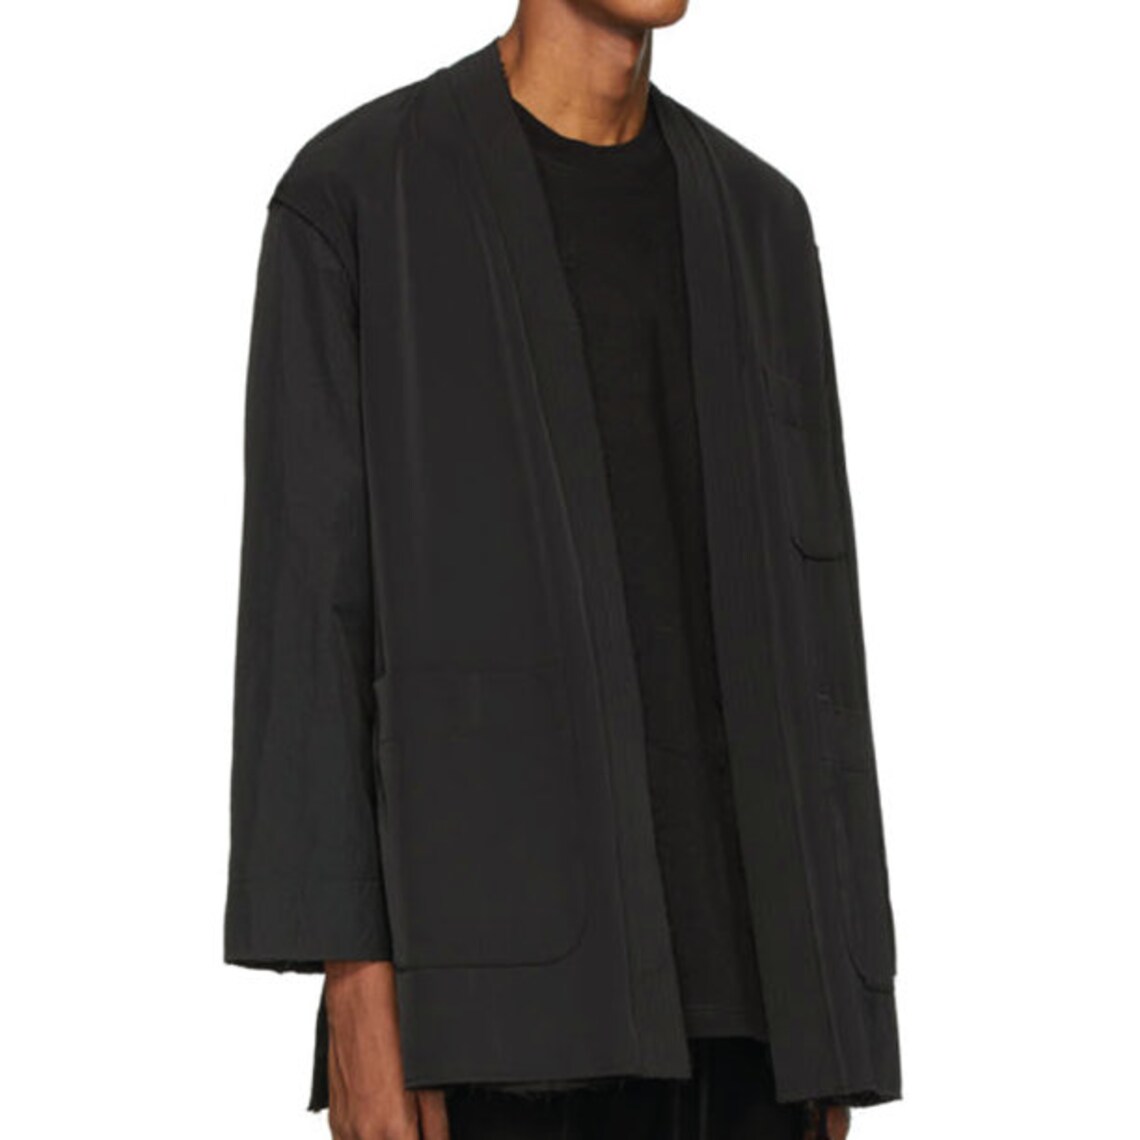 Kimono Jacket PDF Sewing Pattern Sizes XS / S / M / L / XL - Etsy UK